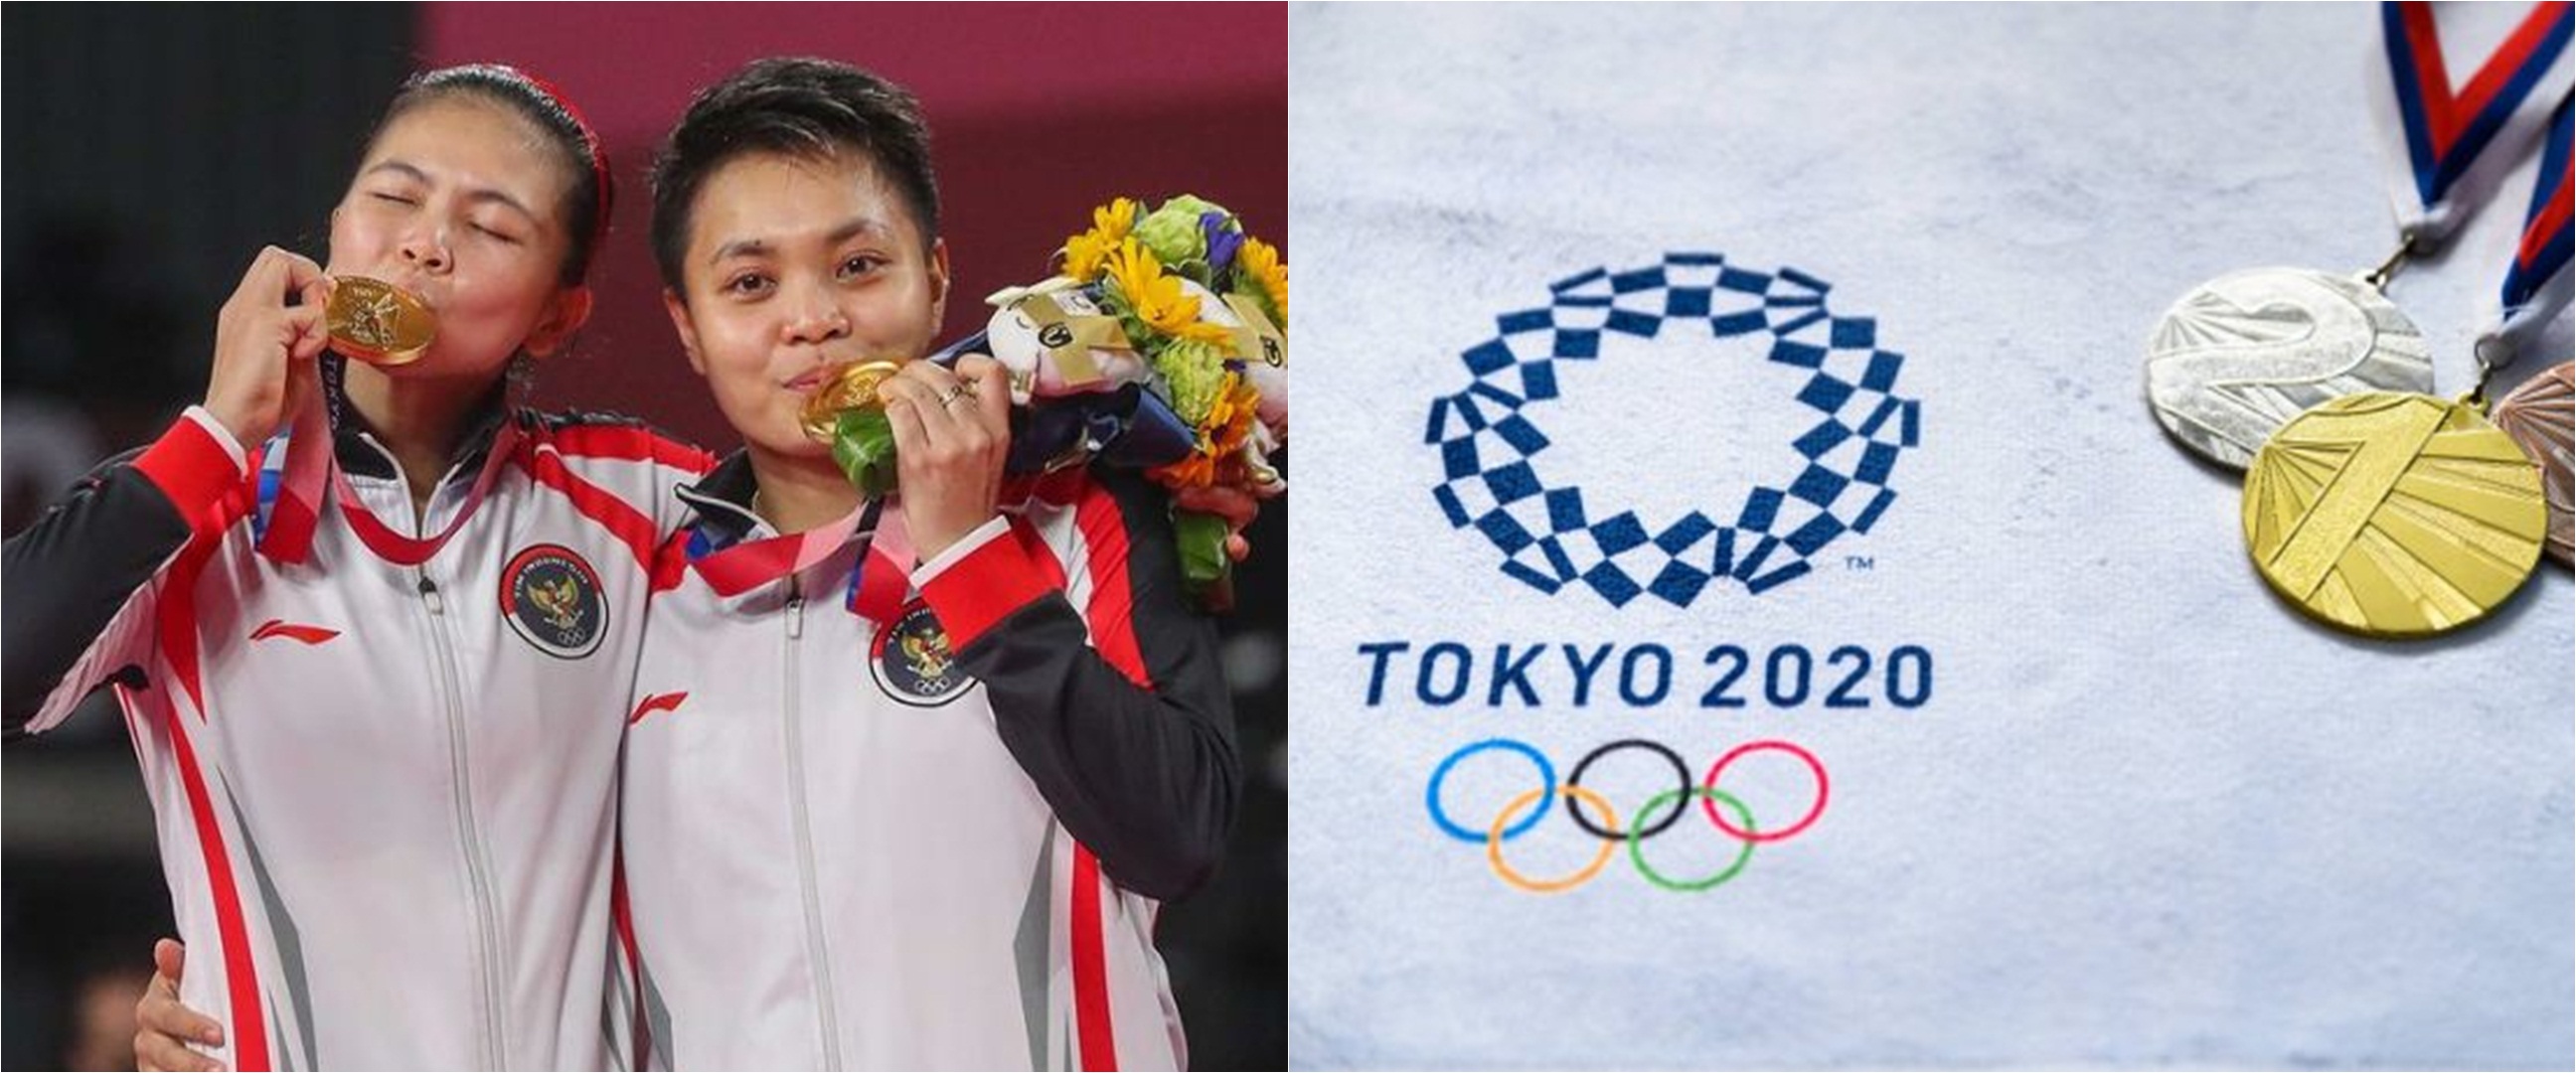 Medali Olimpiade Tokyo 2020 terbuat dari daur ulang ponsel bekas